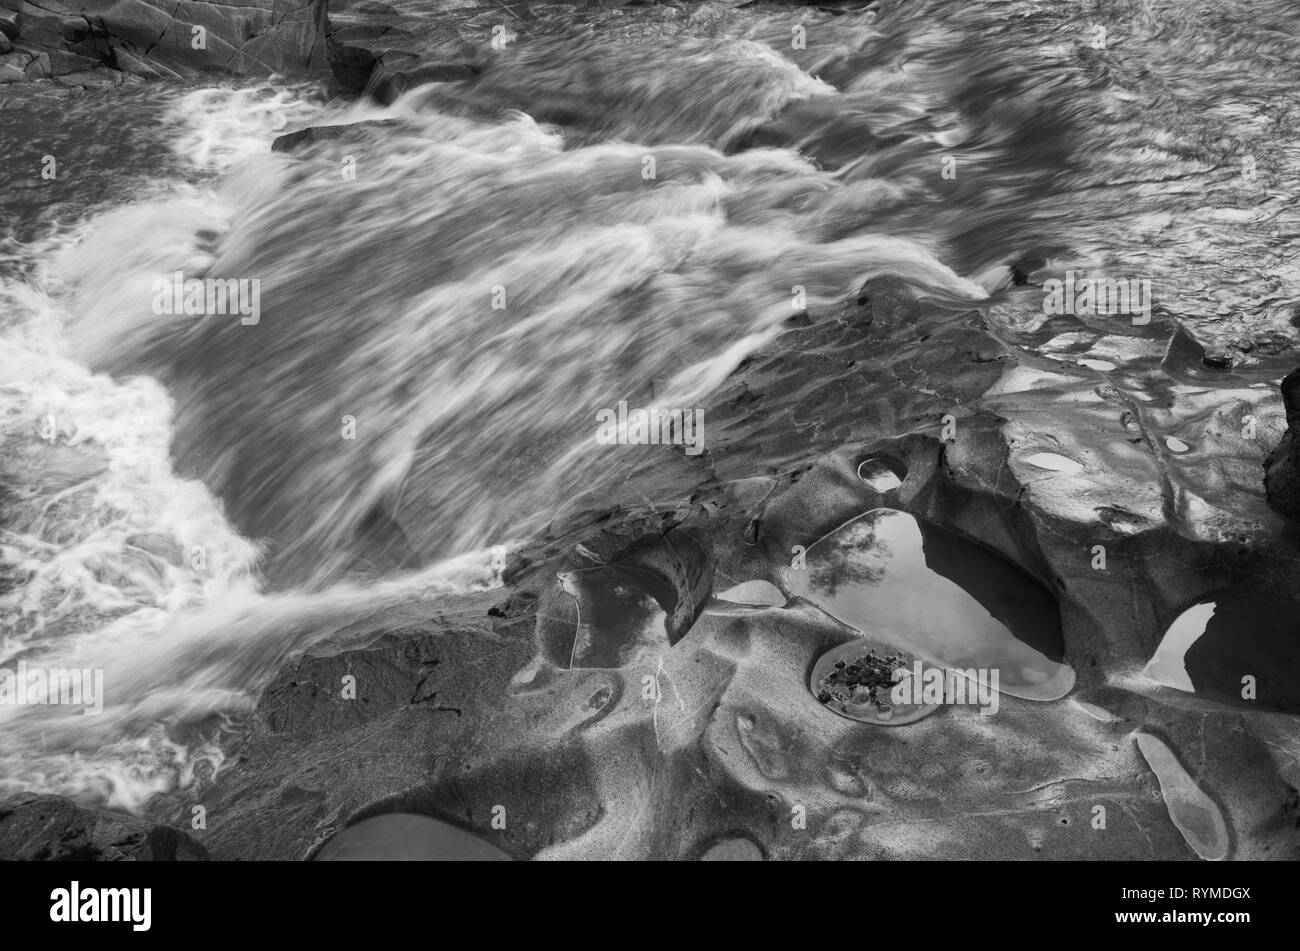 La larga exposición en negro en blanco muestra el movimiento rápido del agua y el detalle de la cama de roca. Foto de stock